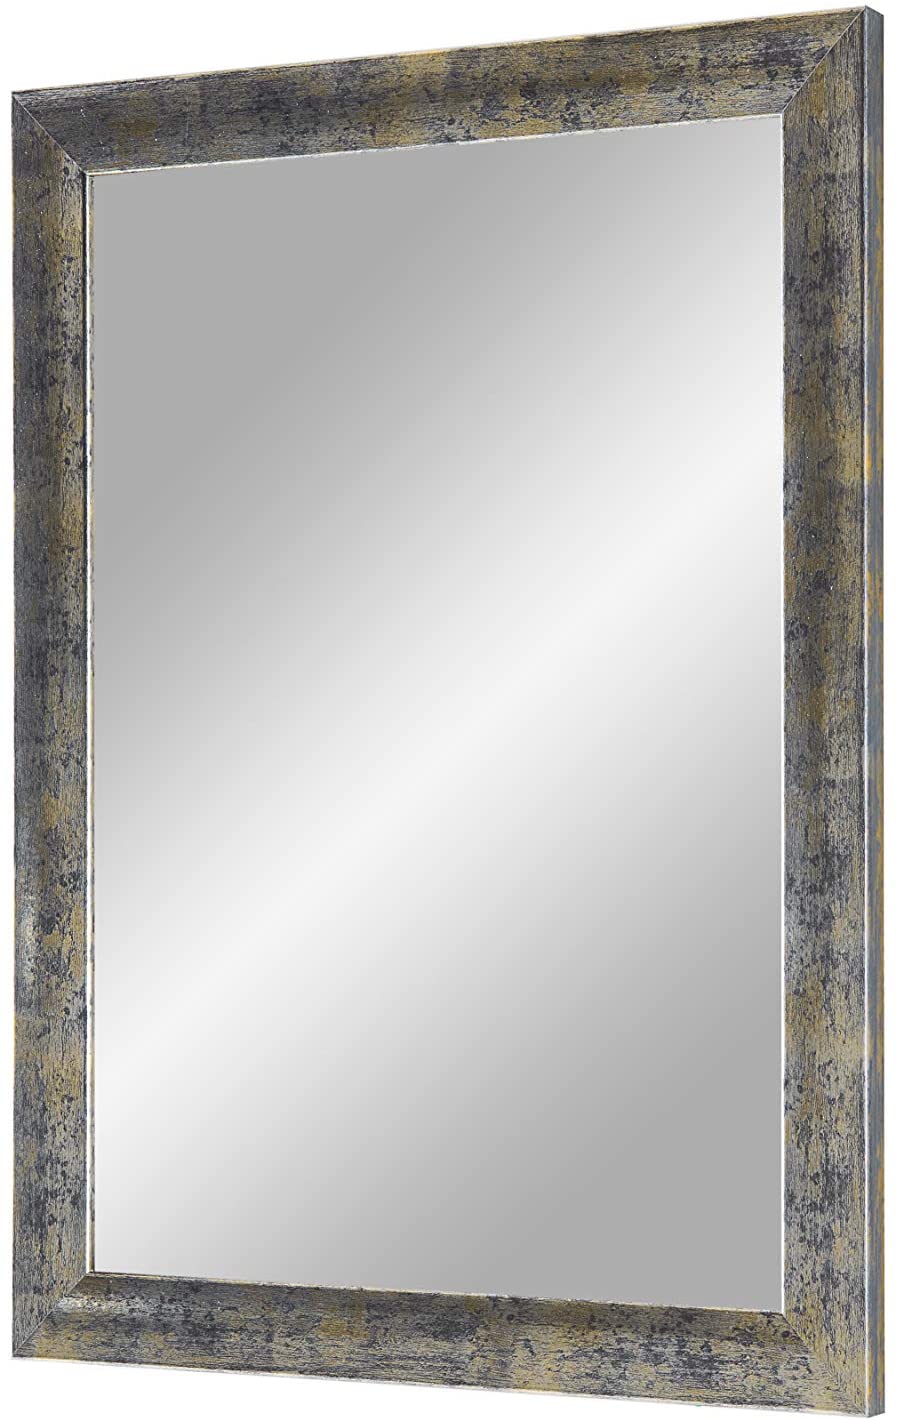 EXCLUSIV Wandspiegel nach Maß (Blau-Gold-Silber), Maßgefertigter Spiegelrahmen inkl. Spiegel und stabiler Rückwand mit Aufhängern